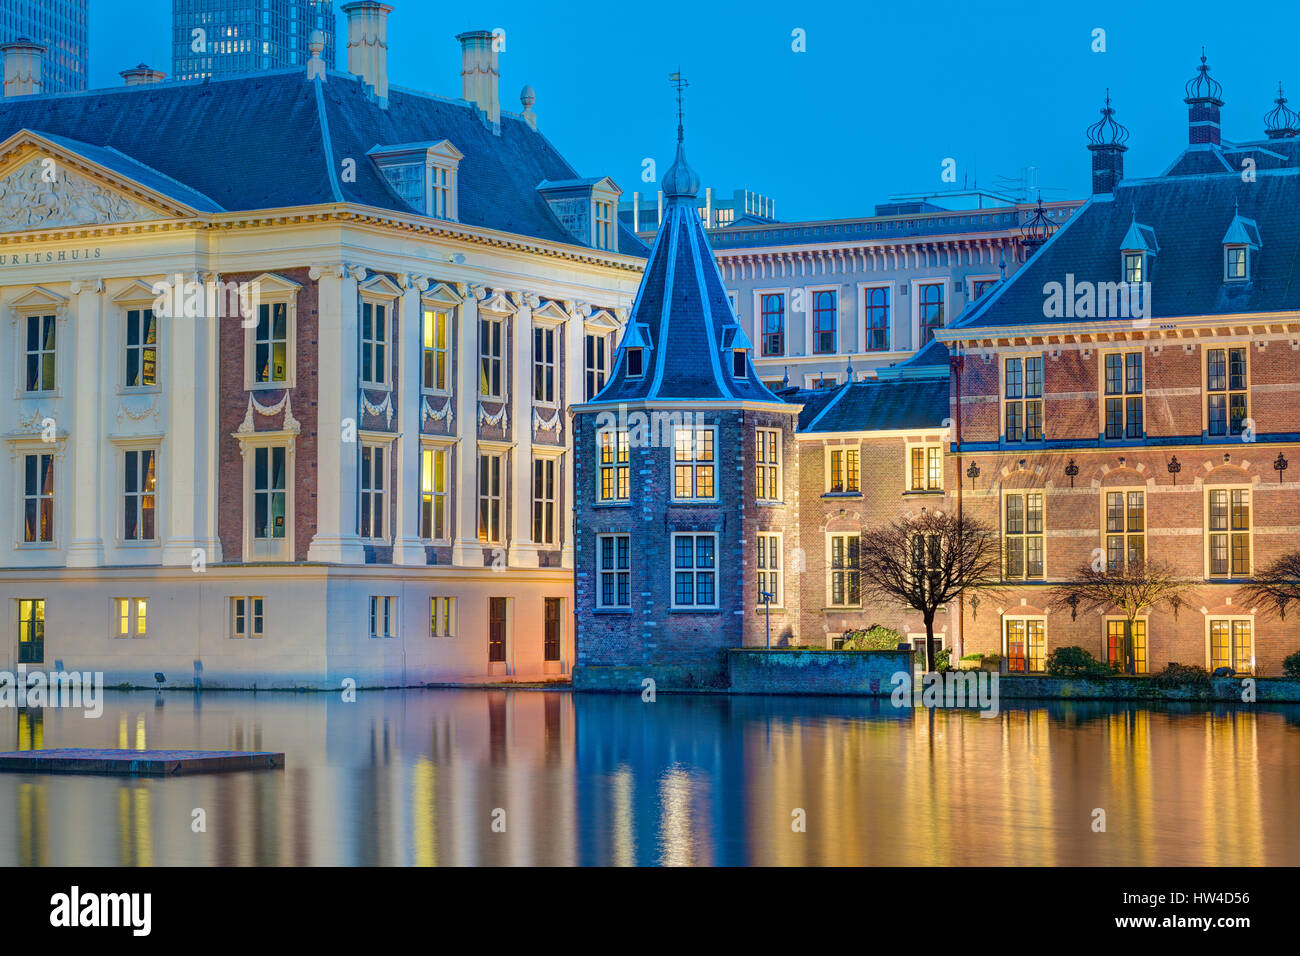 L'Aia Paesi Bassi agli edifici del Parlamento. Het Torentje - La piccola torre - ufficio del Primo Ministro olandese. Foto Stock